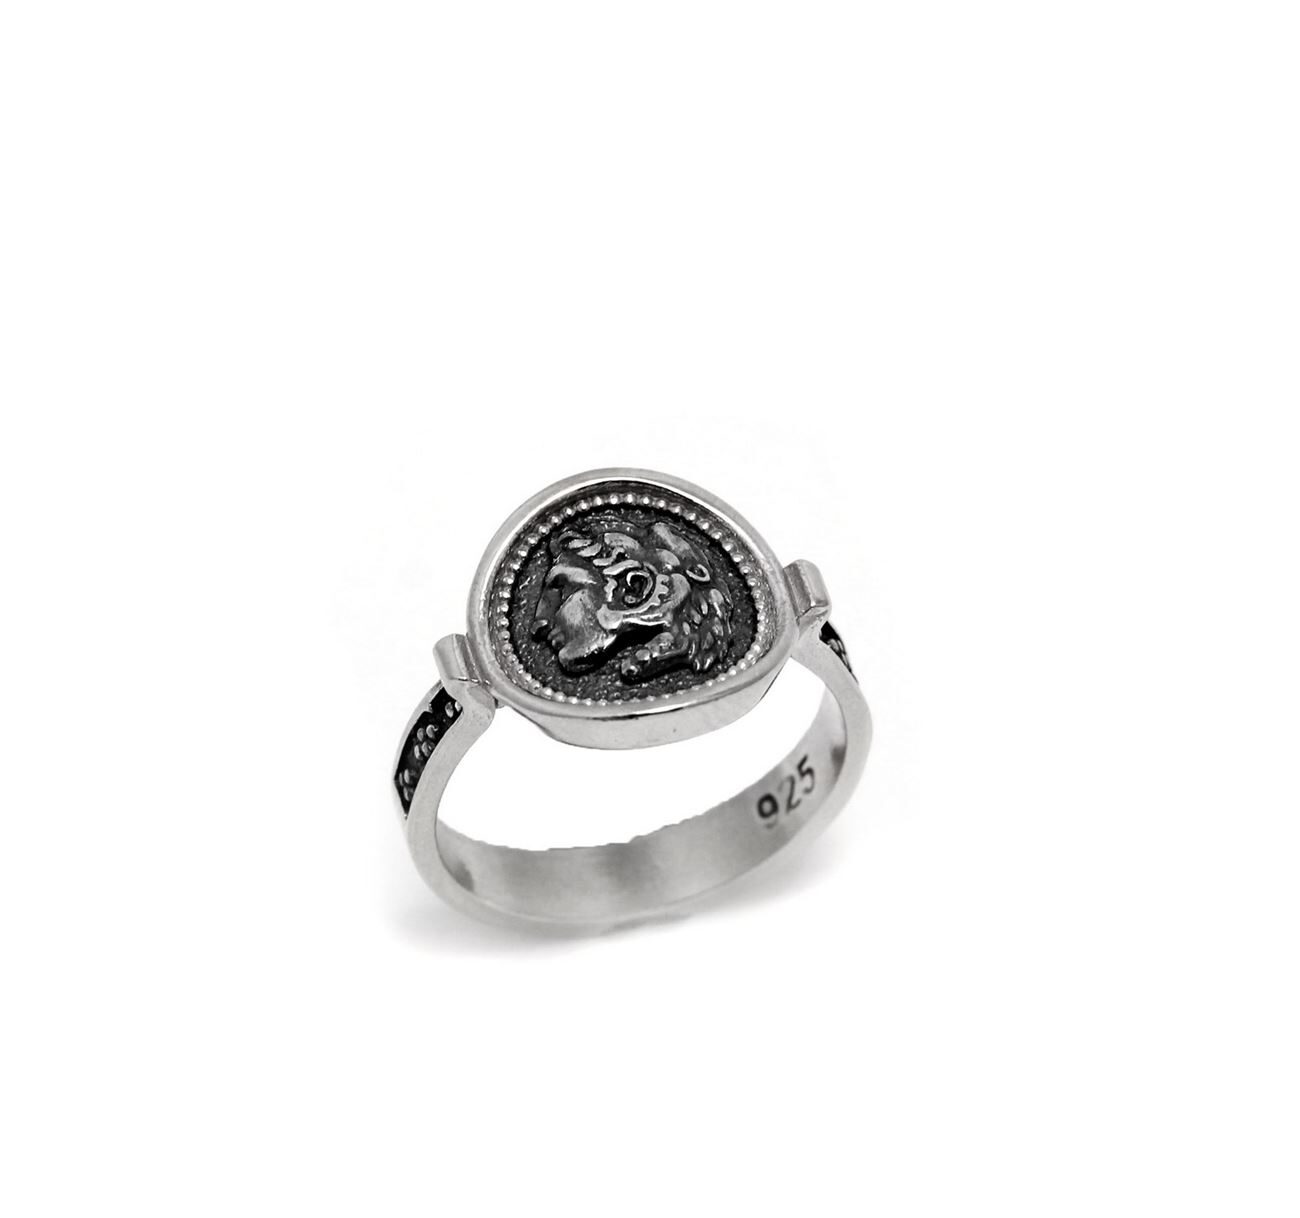 Δαχτυλίδι Ασημένιο Αρχαϊκό “Μέγας Αλέξανδρος”